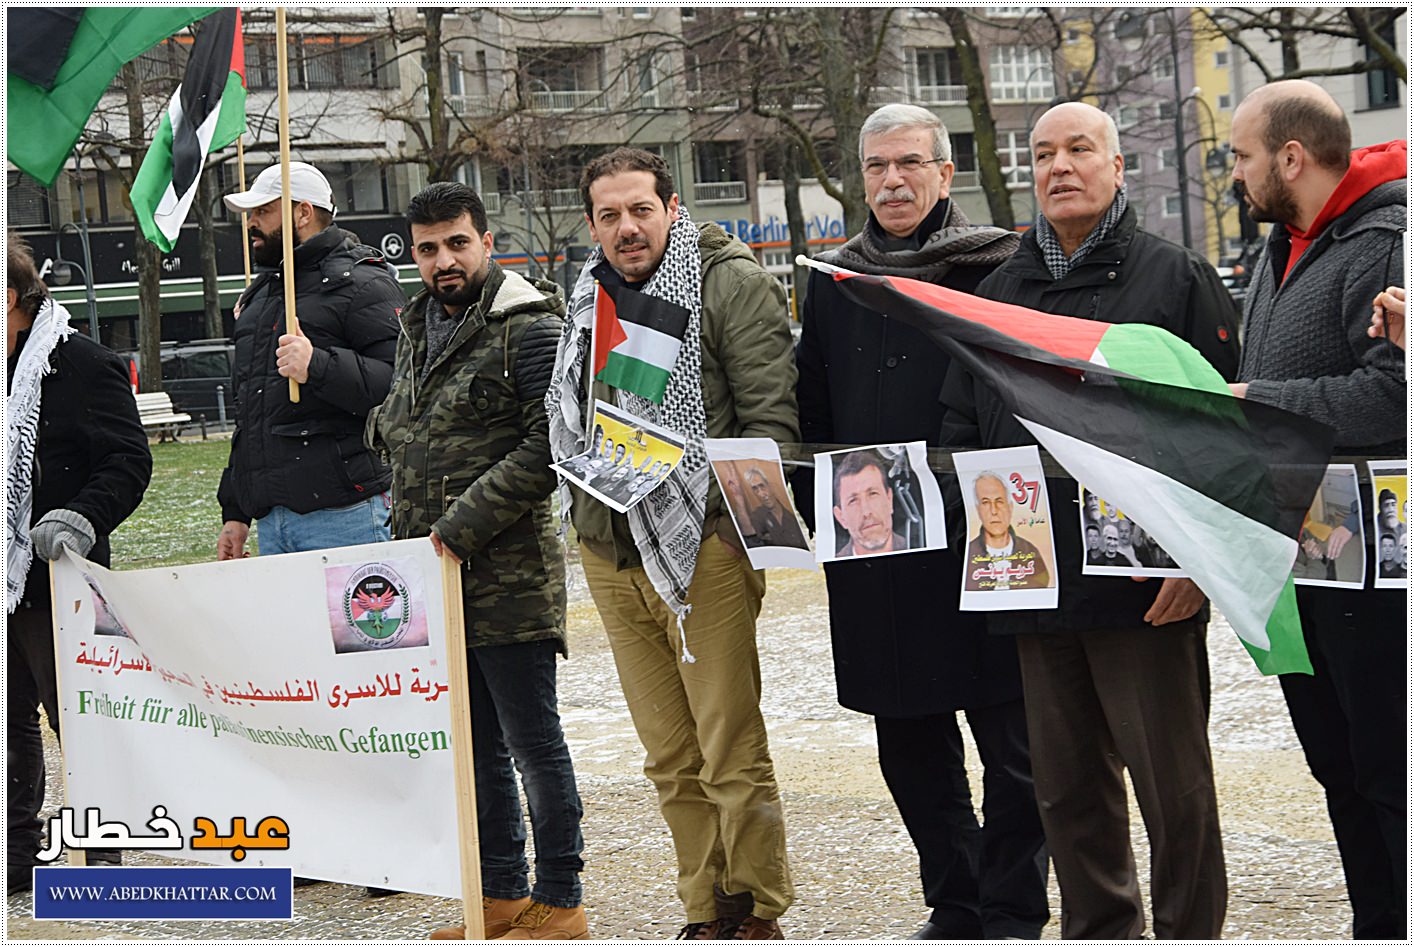 وقفة تضامنية مع الأسرى الفلسطينيين سجون الإحتلال الصهيوني في برلين